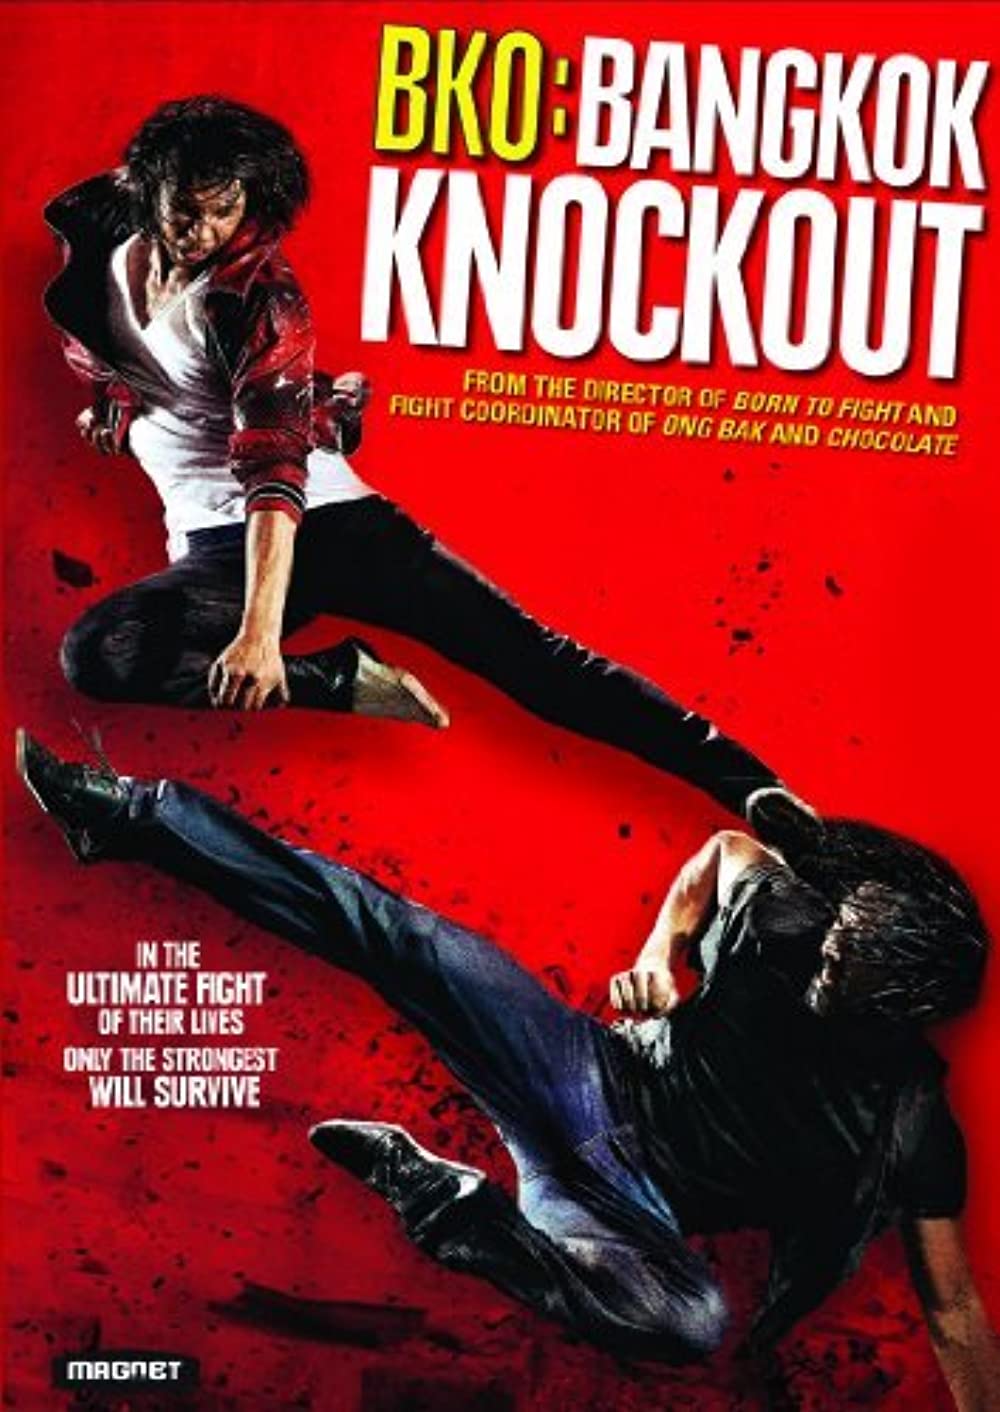 ดูหนังออนไลน์ฟรี Bangkok Knockout (2010) โคตรสู้ โคตรโส หนังเต็มเรื่อง หนังมาสเตอร์ ดูหนังHD ดูหนังออนไลน์ ดูหนังใหม่